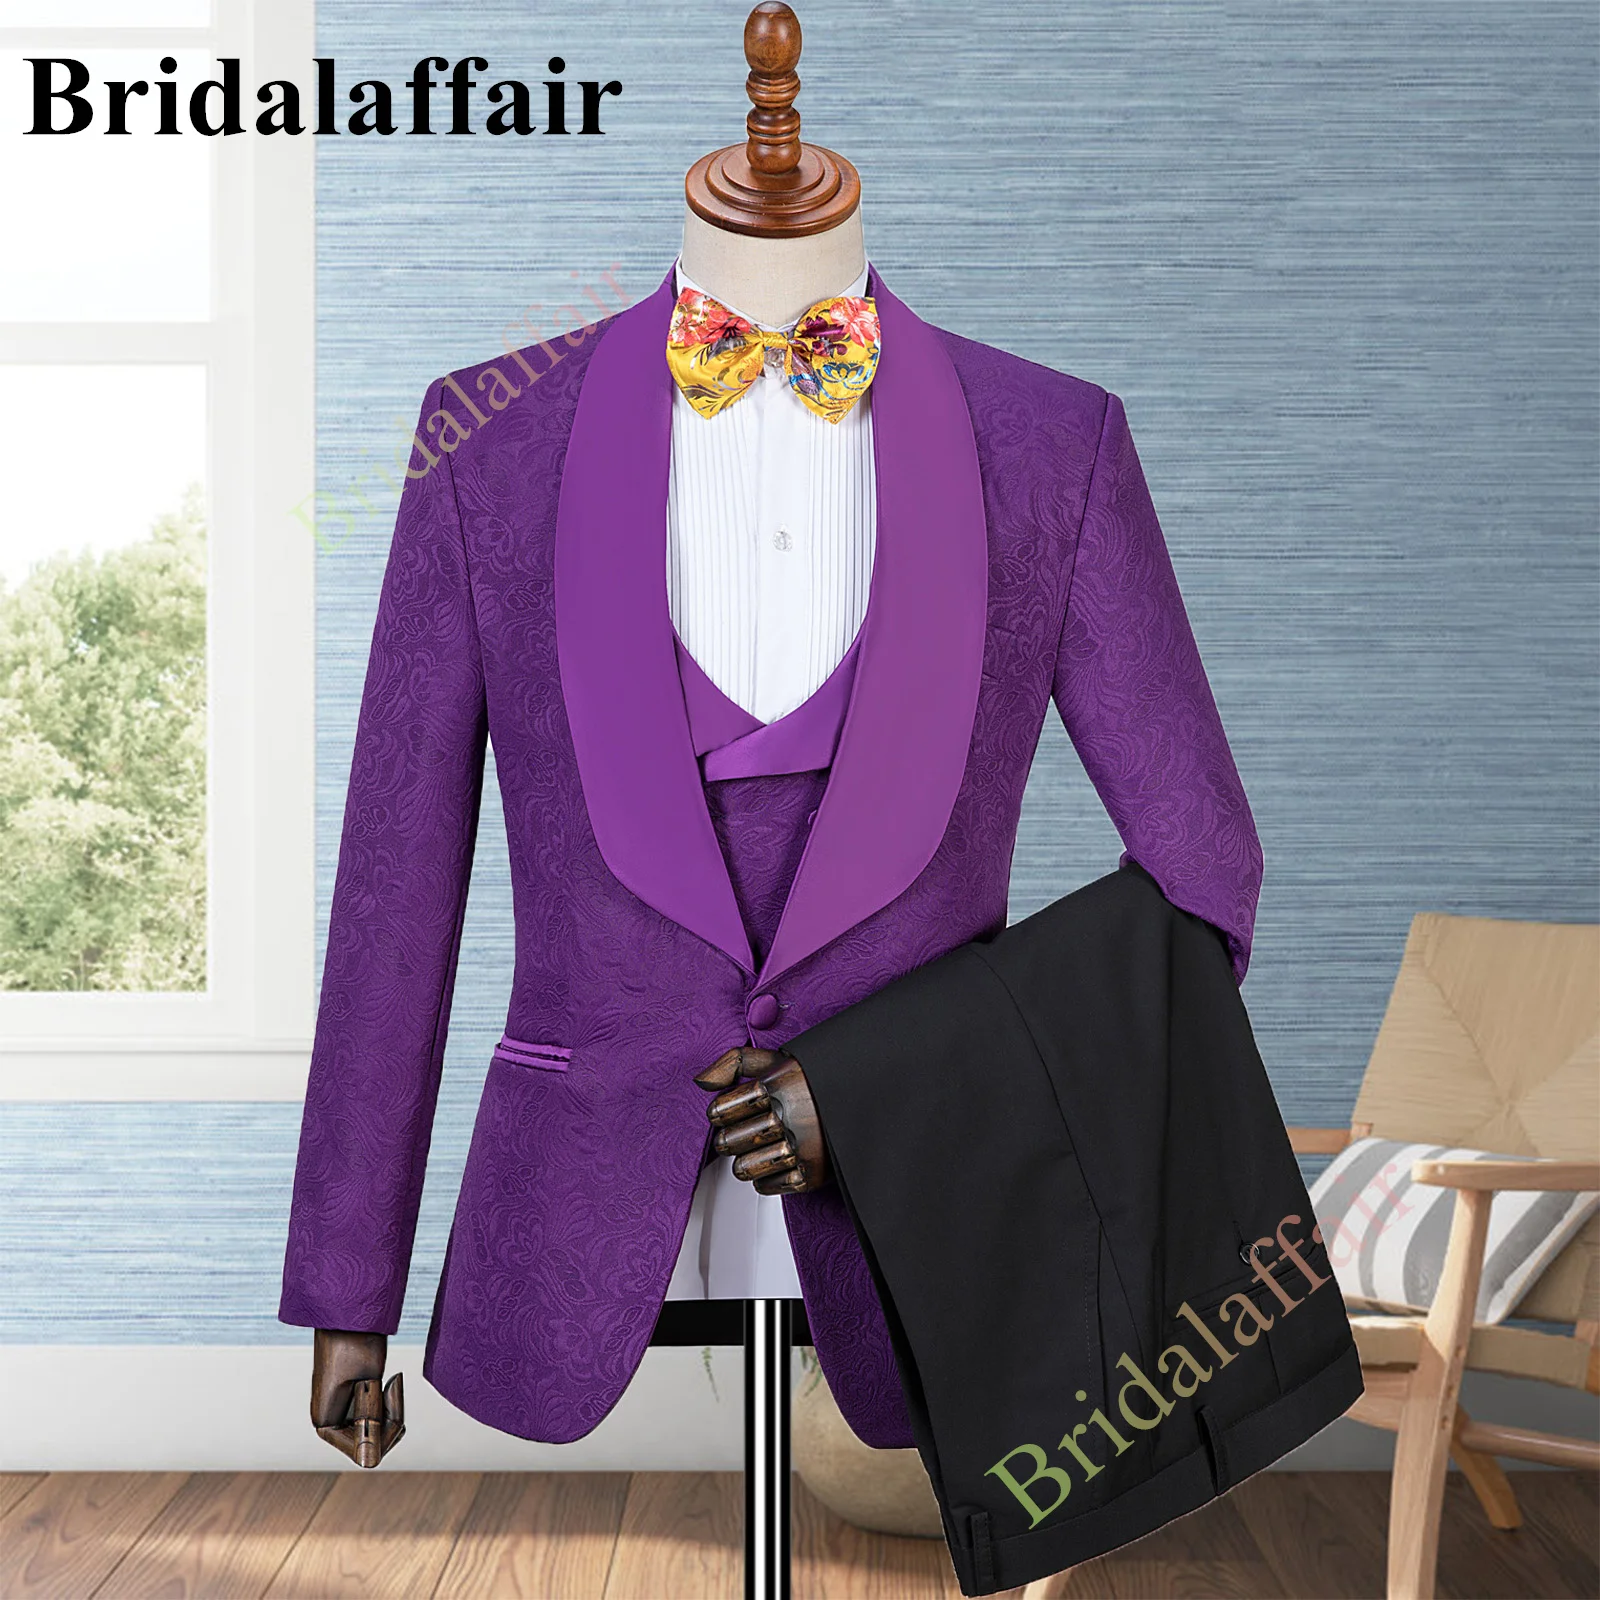 Bridalaffair Mens Purple Suits Floral Printed Jacquard Wedding Tuxedo Suit for Men 3pcs Blazer Jacket Pants Vest Costume Homme